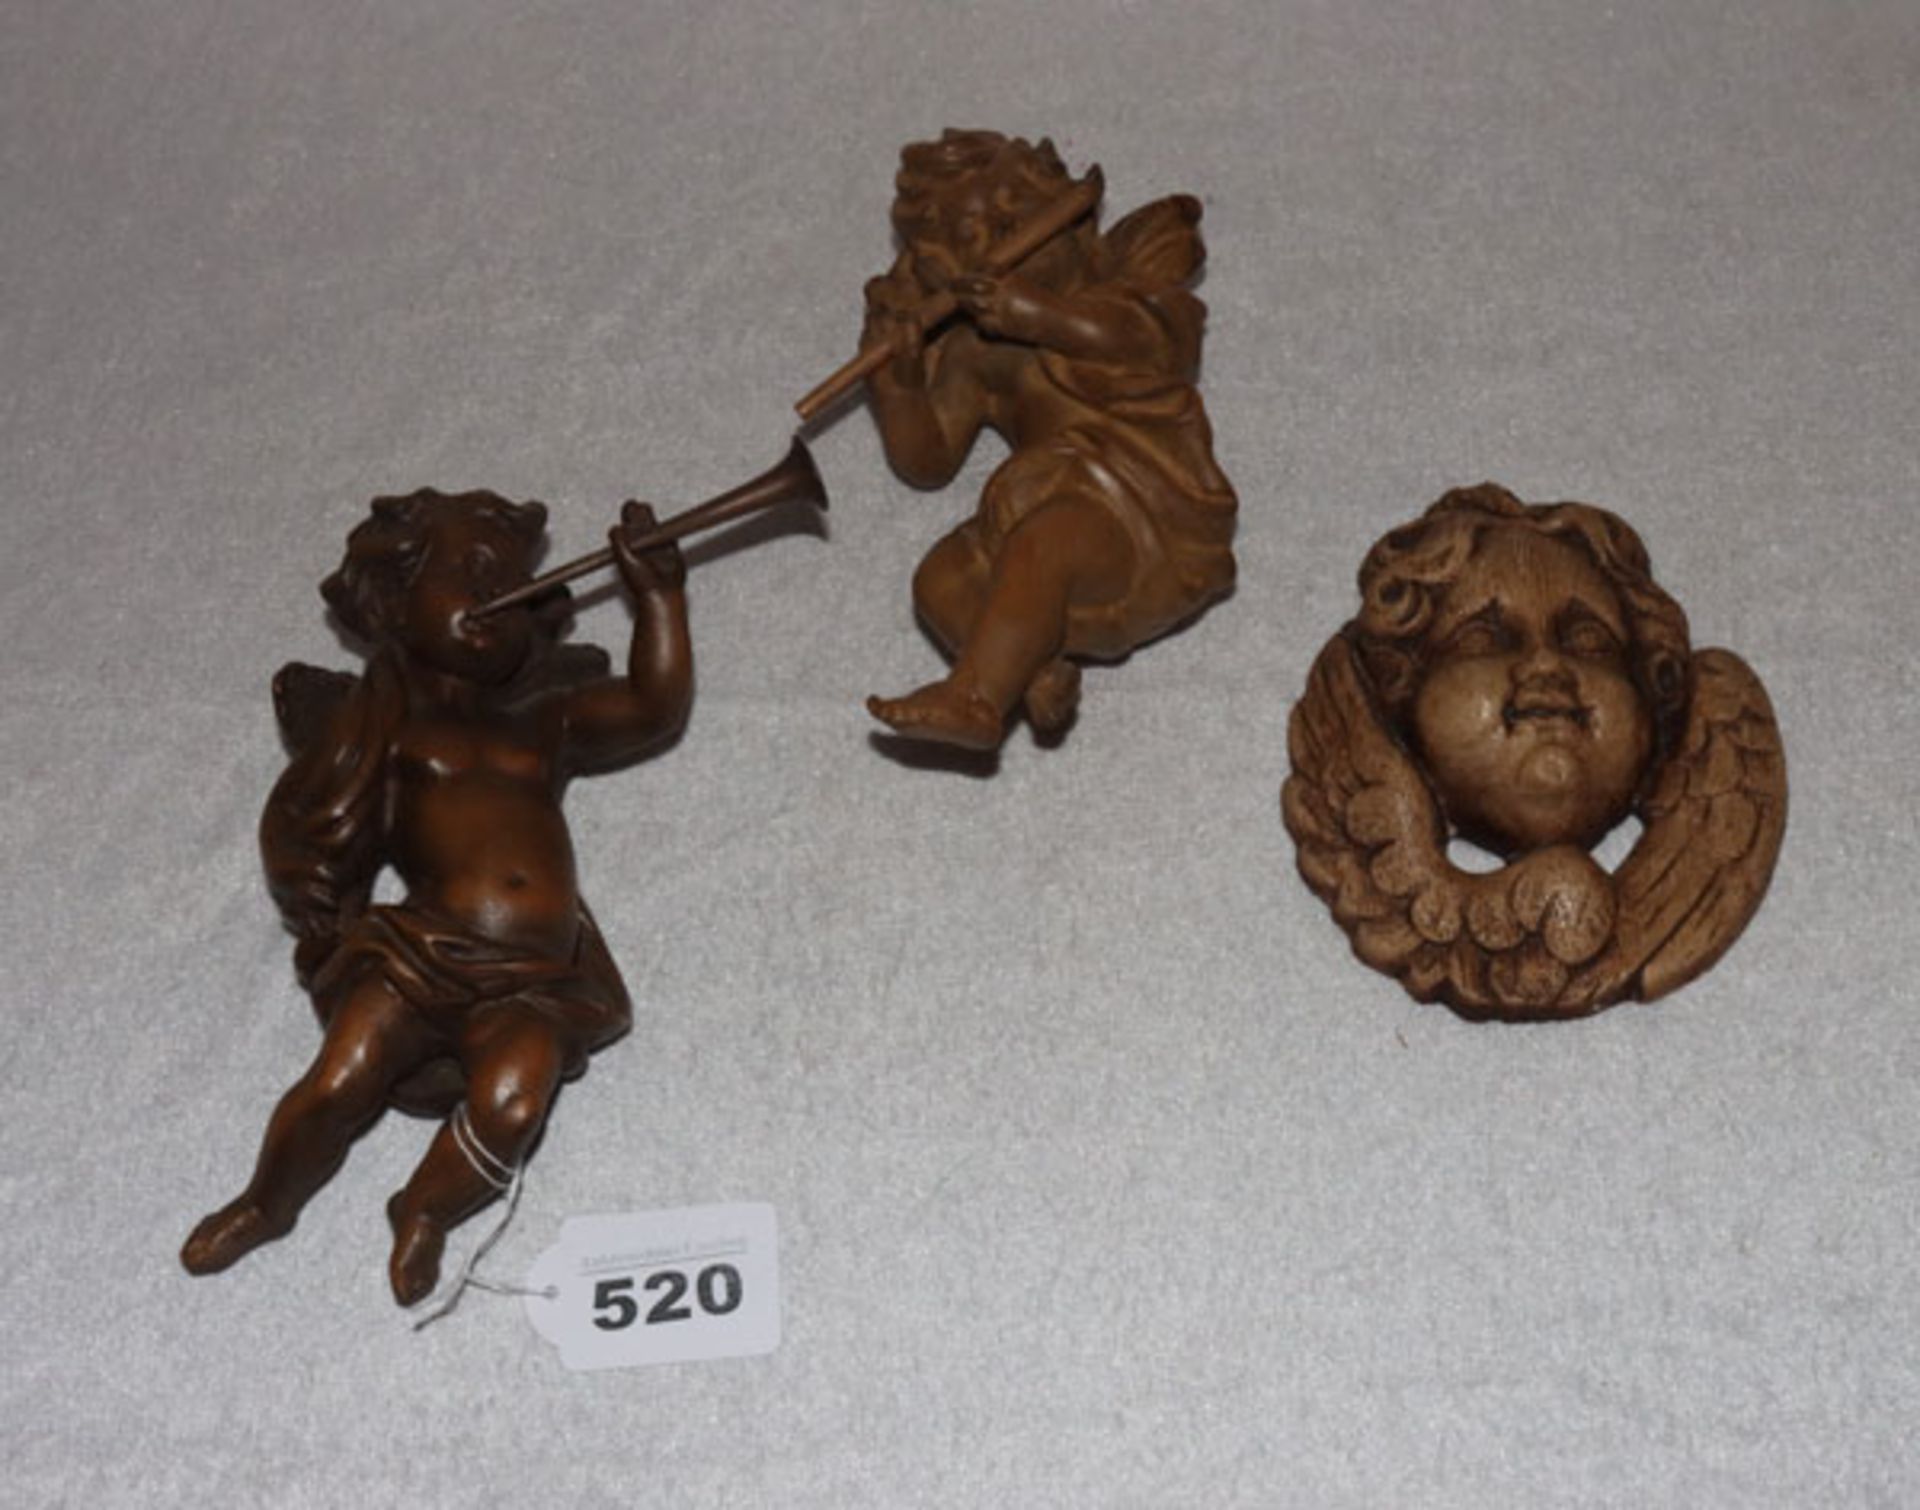 2 Holzfiguren 'Musizierende Engel', dunkel gebeizt, H 17 cm, und Putten-Relief aus Gips, H 13 cm,